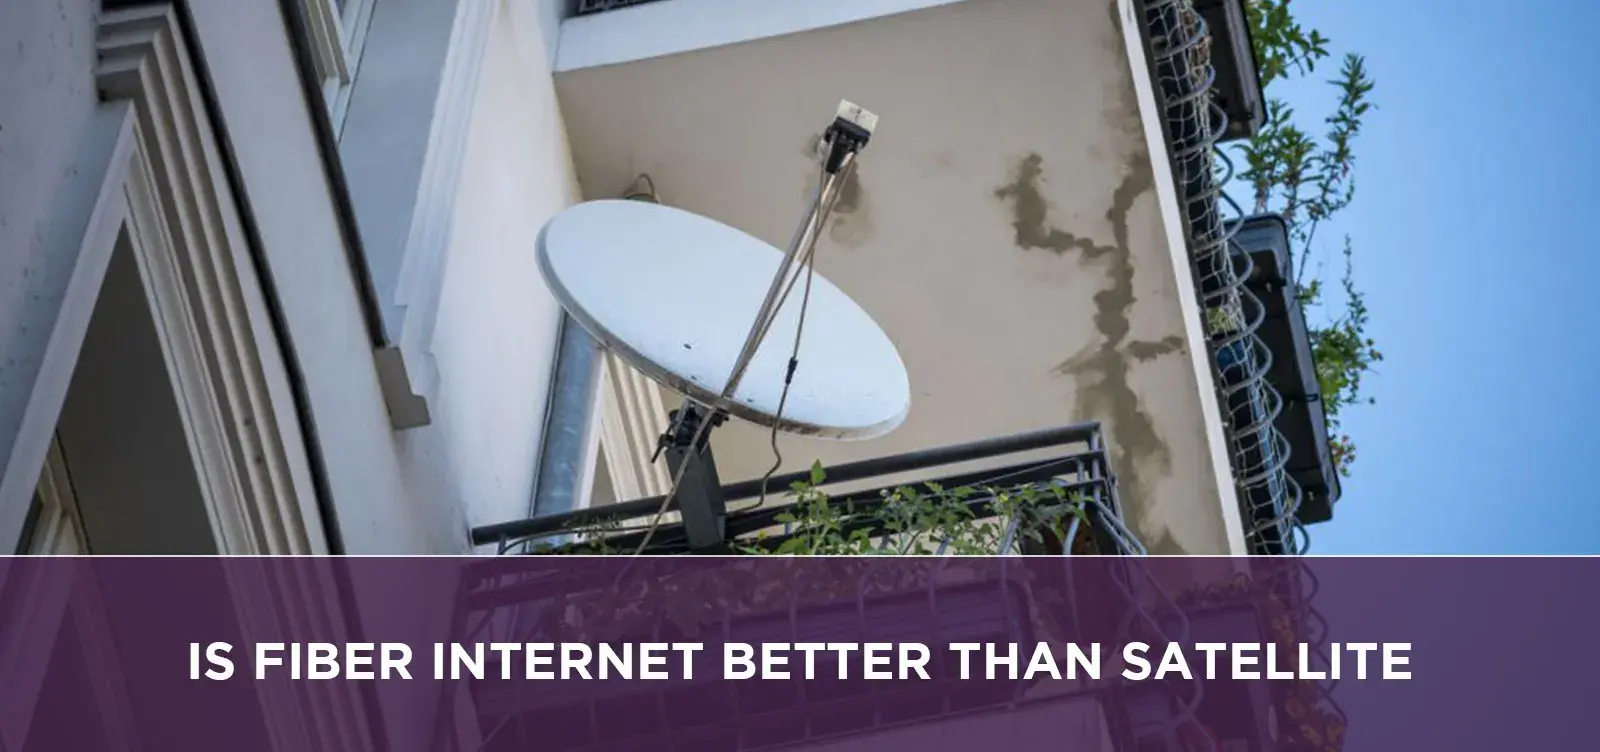 Is Fiber Internet Better Than Satellite?